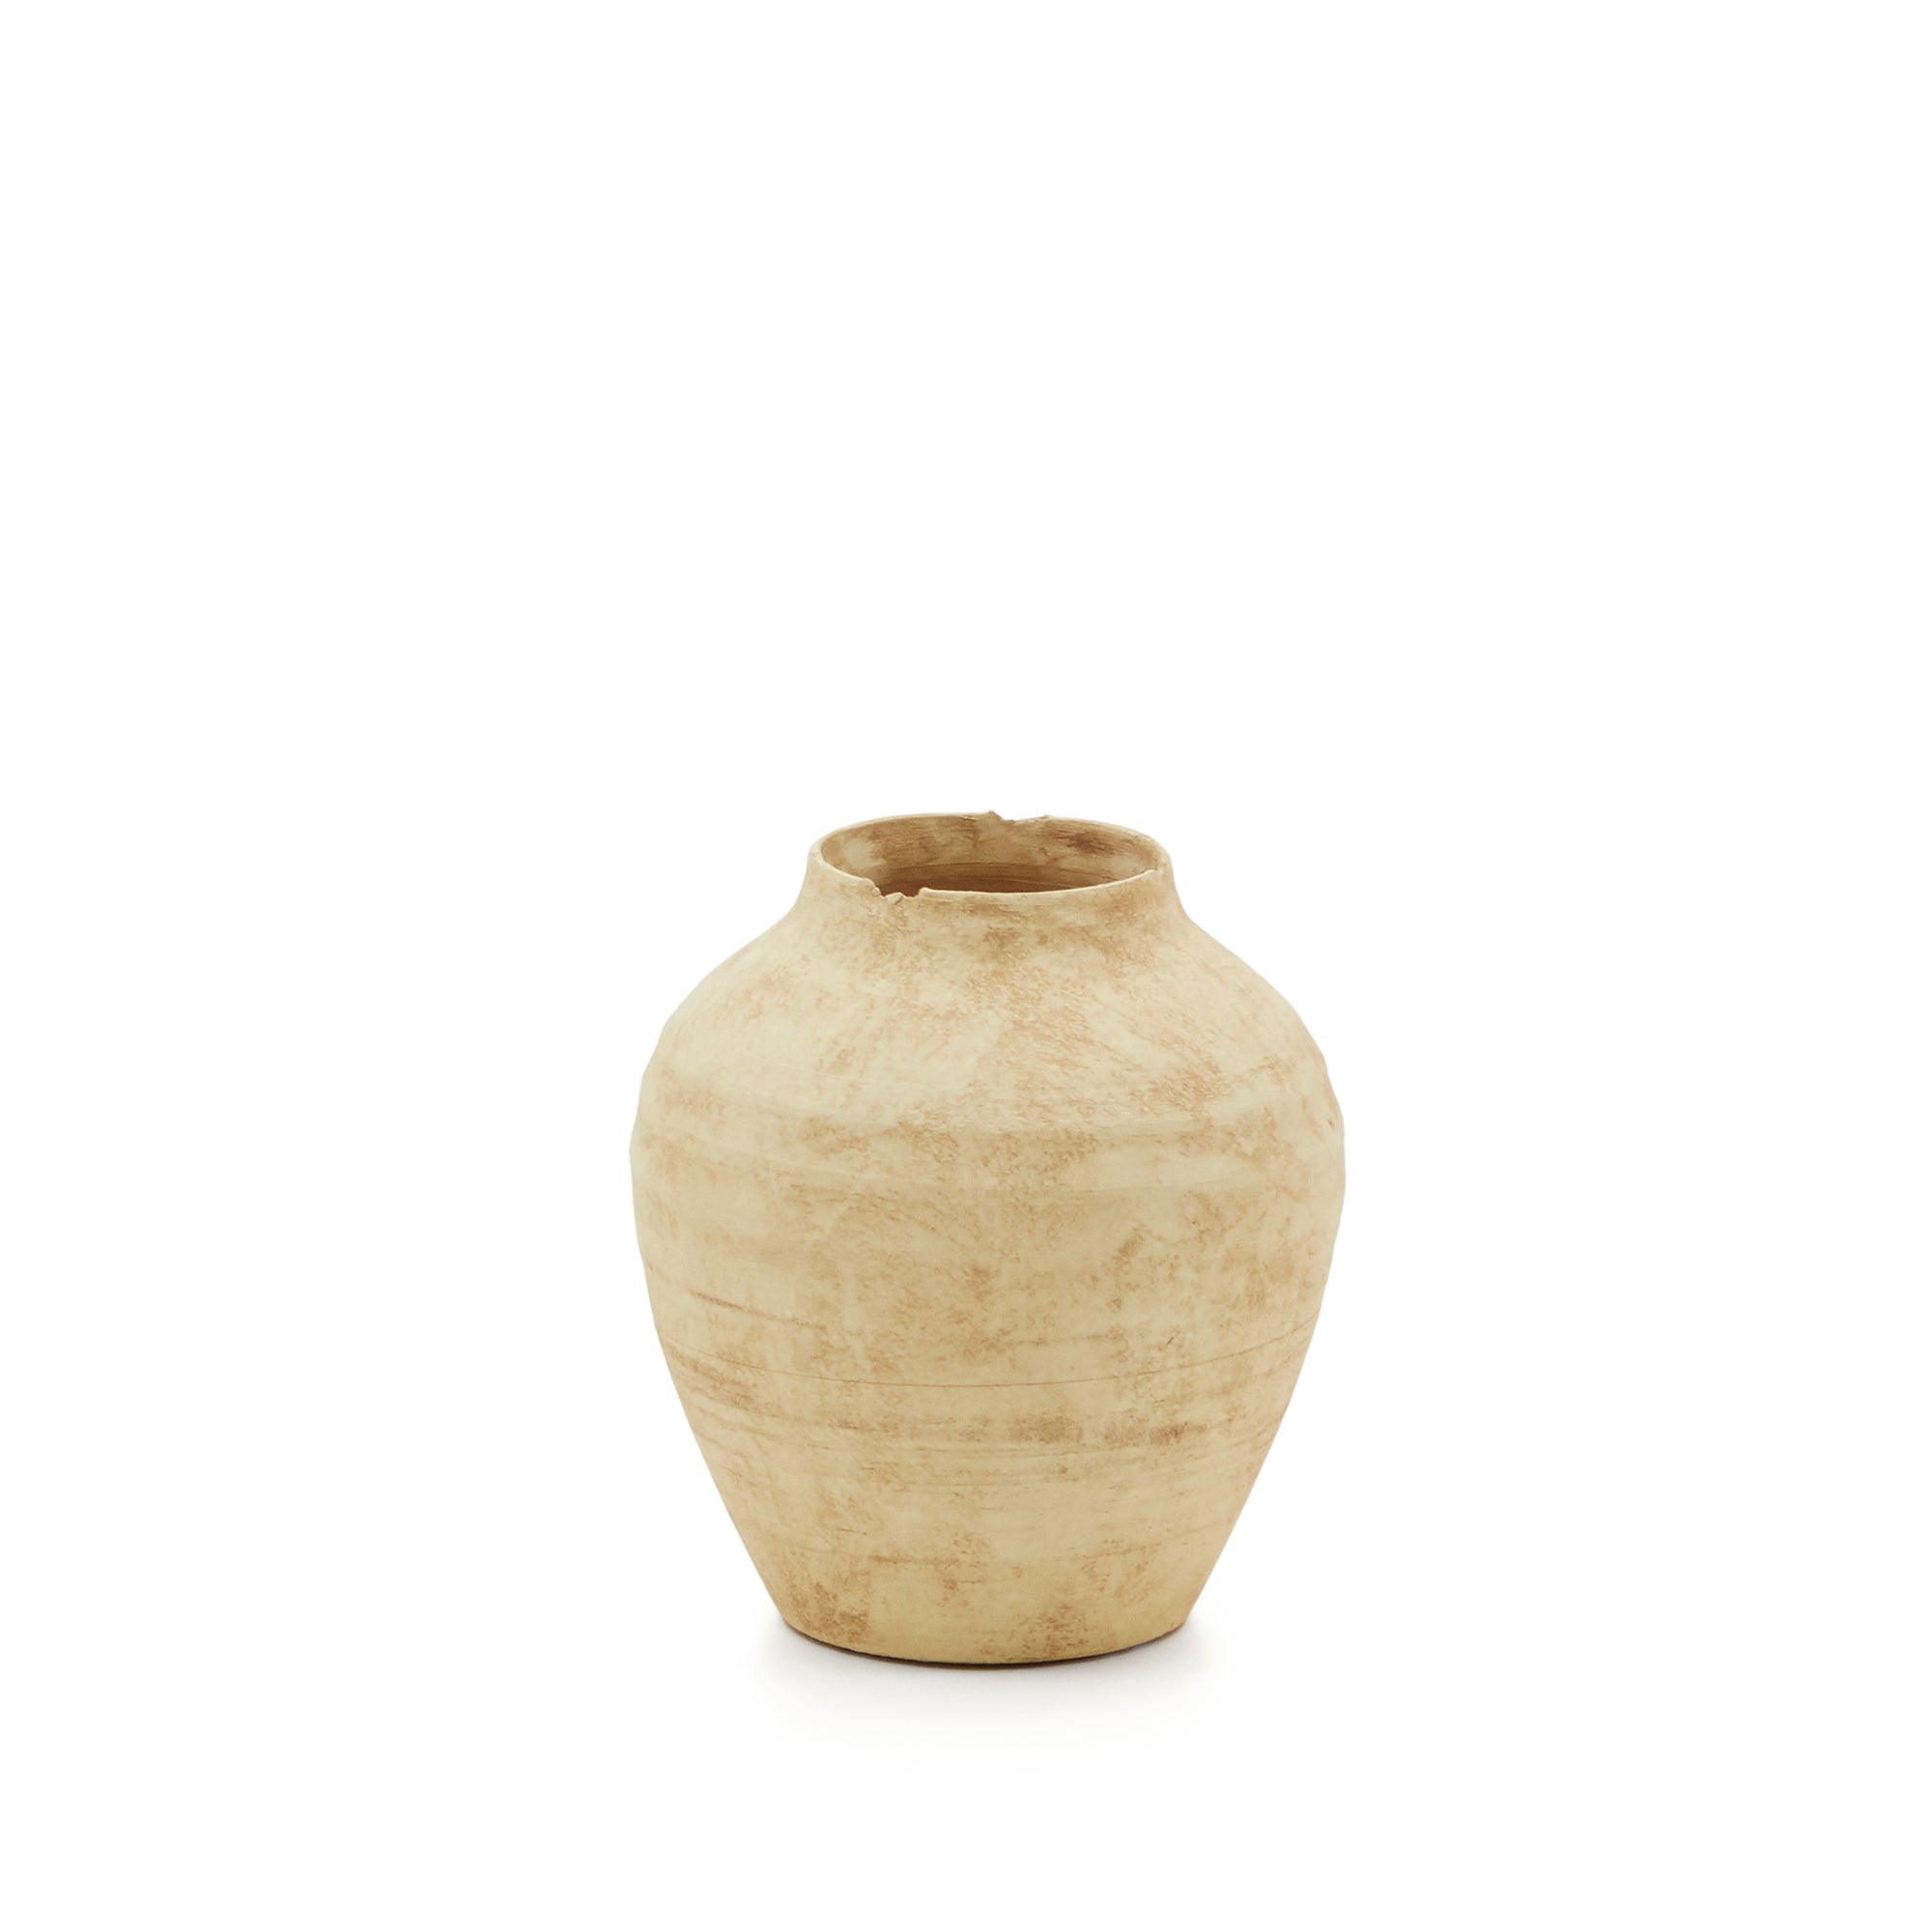 Silbet beige ceramic vase, 19 cm